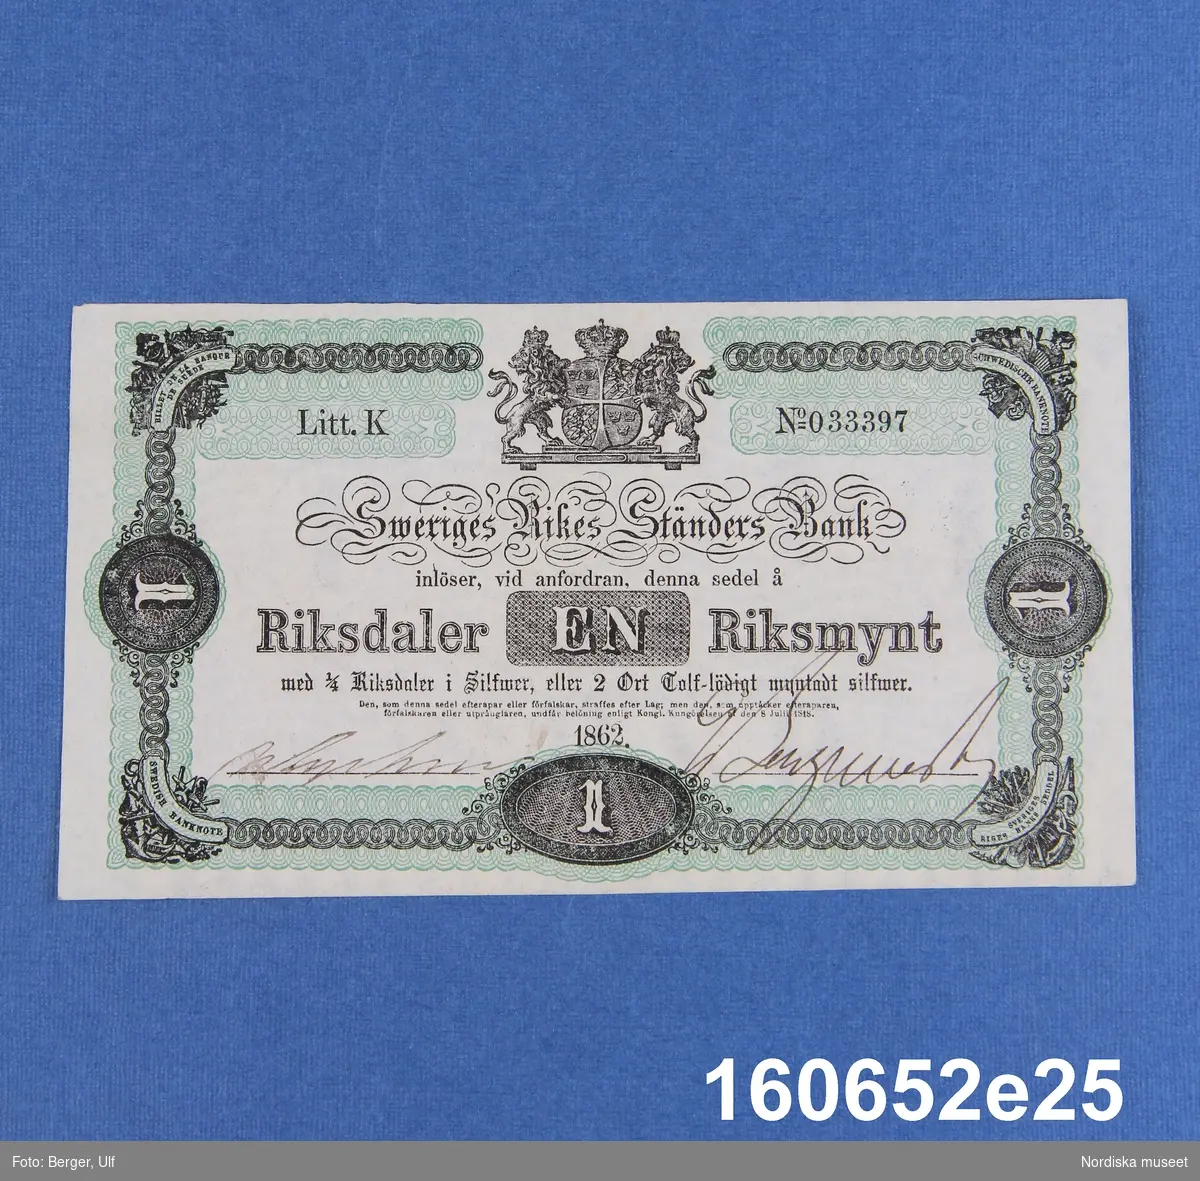 Sveriges Rikes Ständers Bank, 1 riksdaler riksmynt. Daterad 1862, litt K nr 033397.